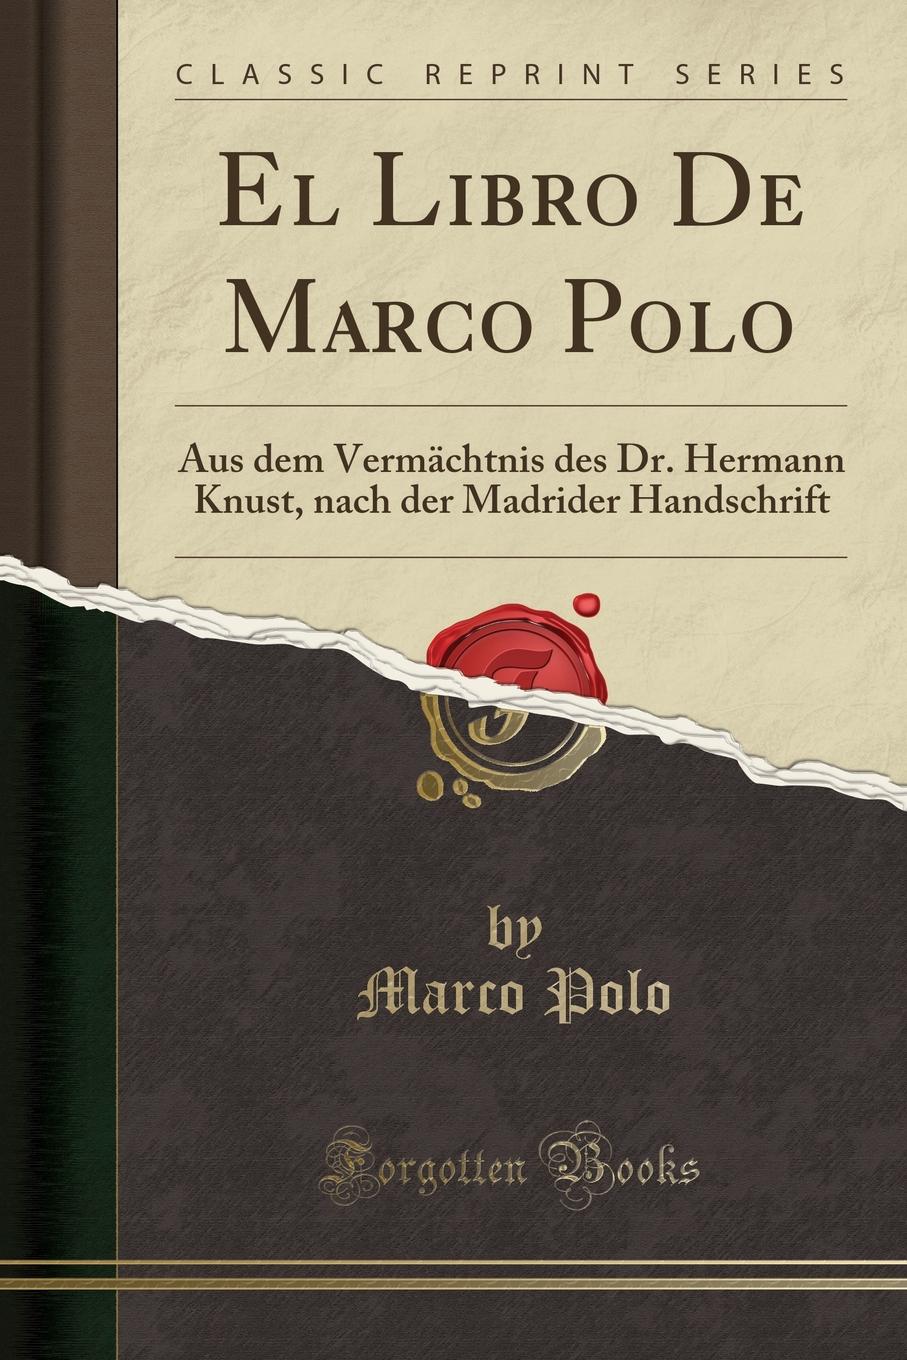 Marco Polo El Libro De Marco Polo. Aus dem Vermachtnis des Dr. Hermann Knust, nach der Madrider Handschrift (Classic Reprint)